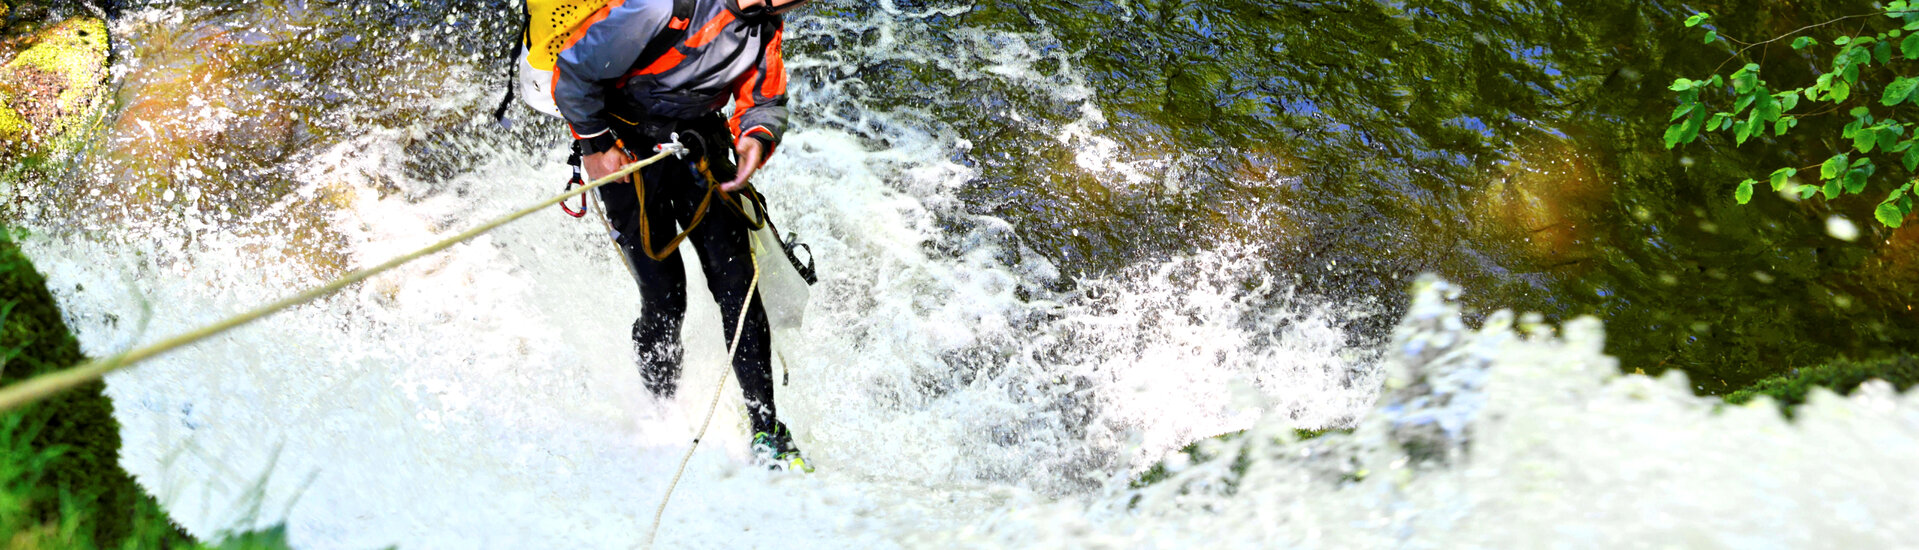 Le canyoning à corde à travers de belles verticalités d'eau en cascades à descendre en rappels